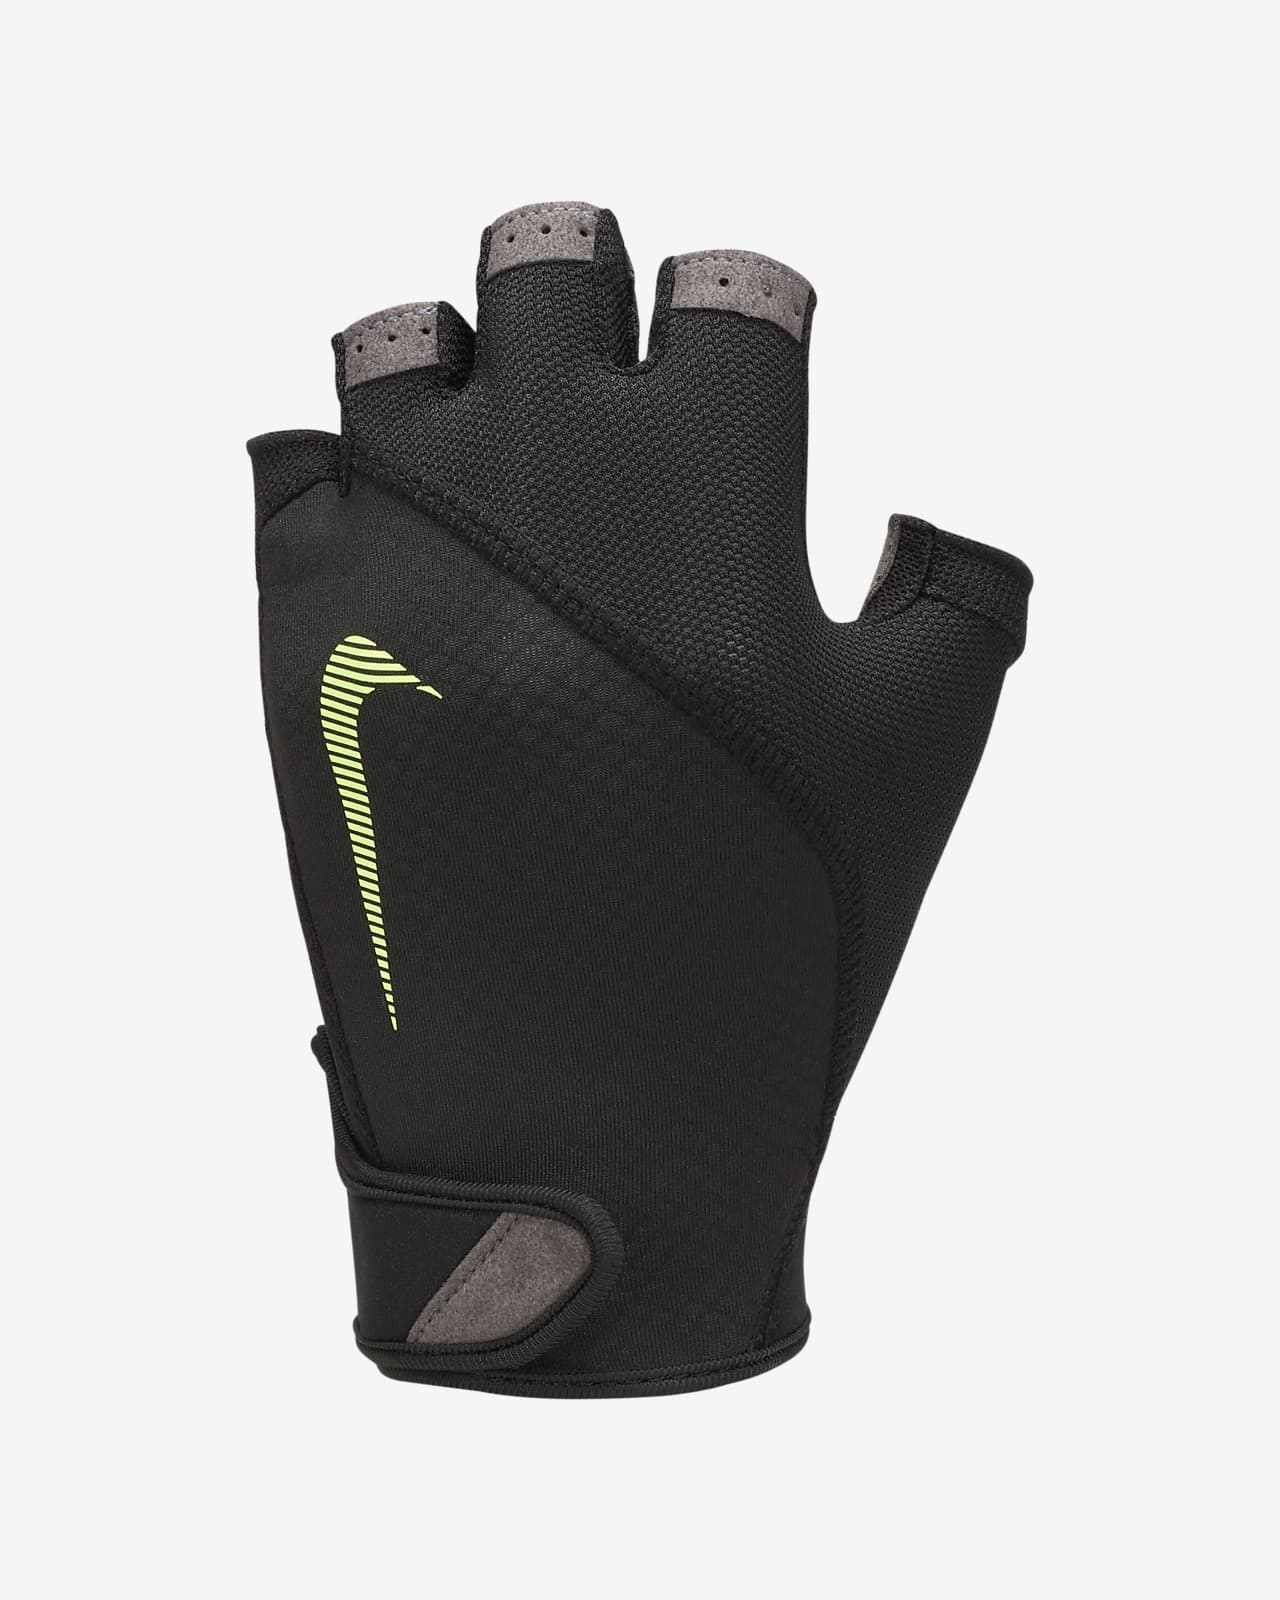 Nike Men's Training Gloves